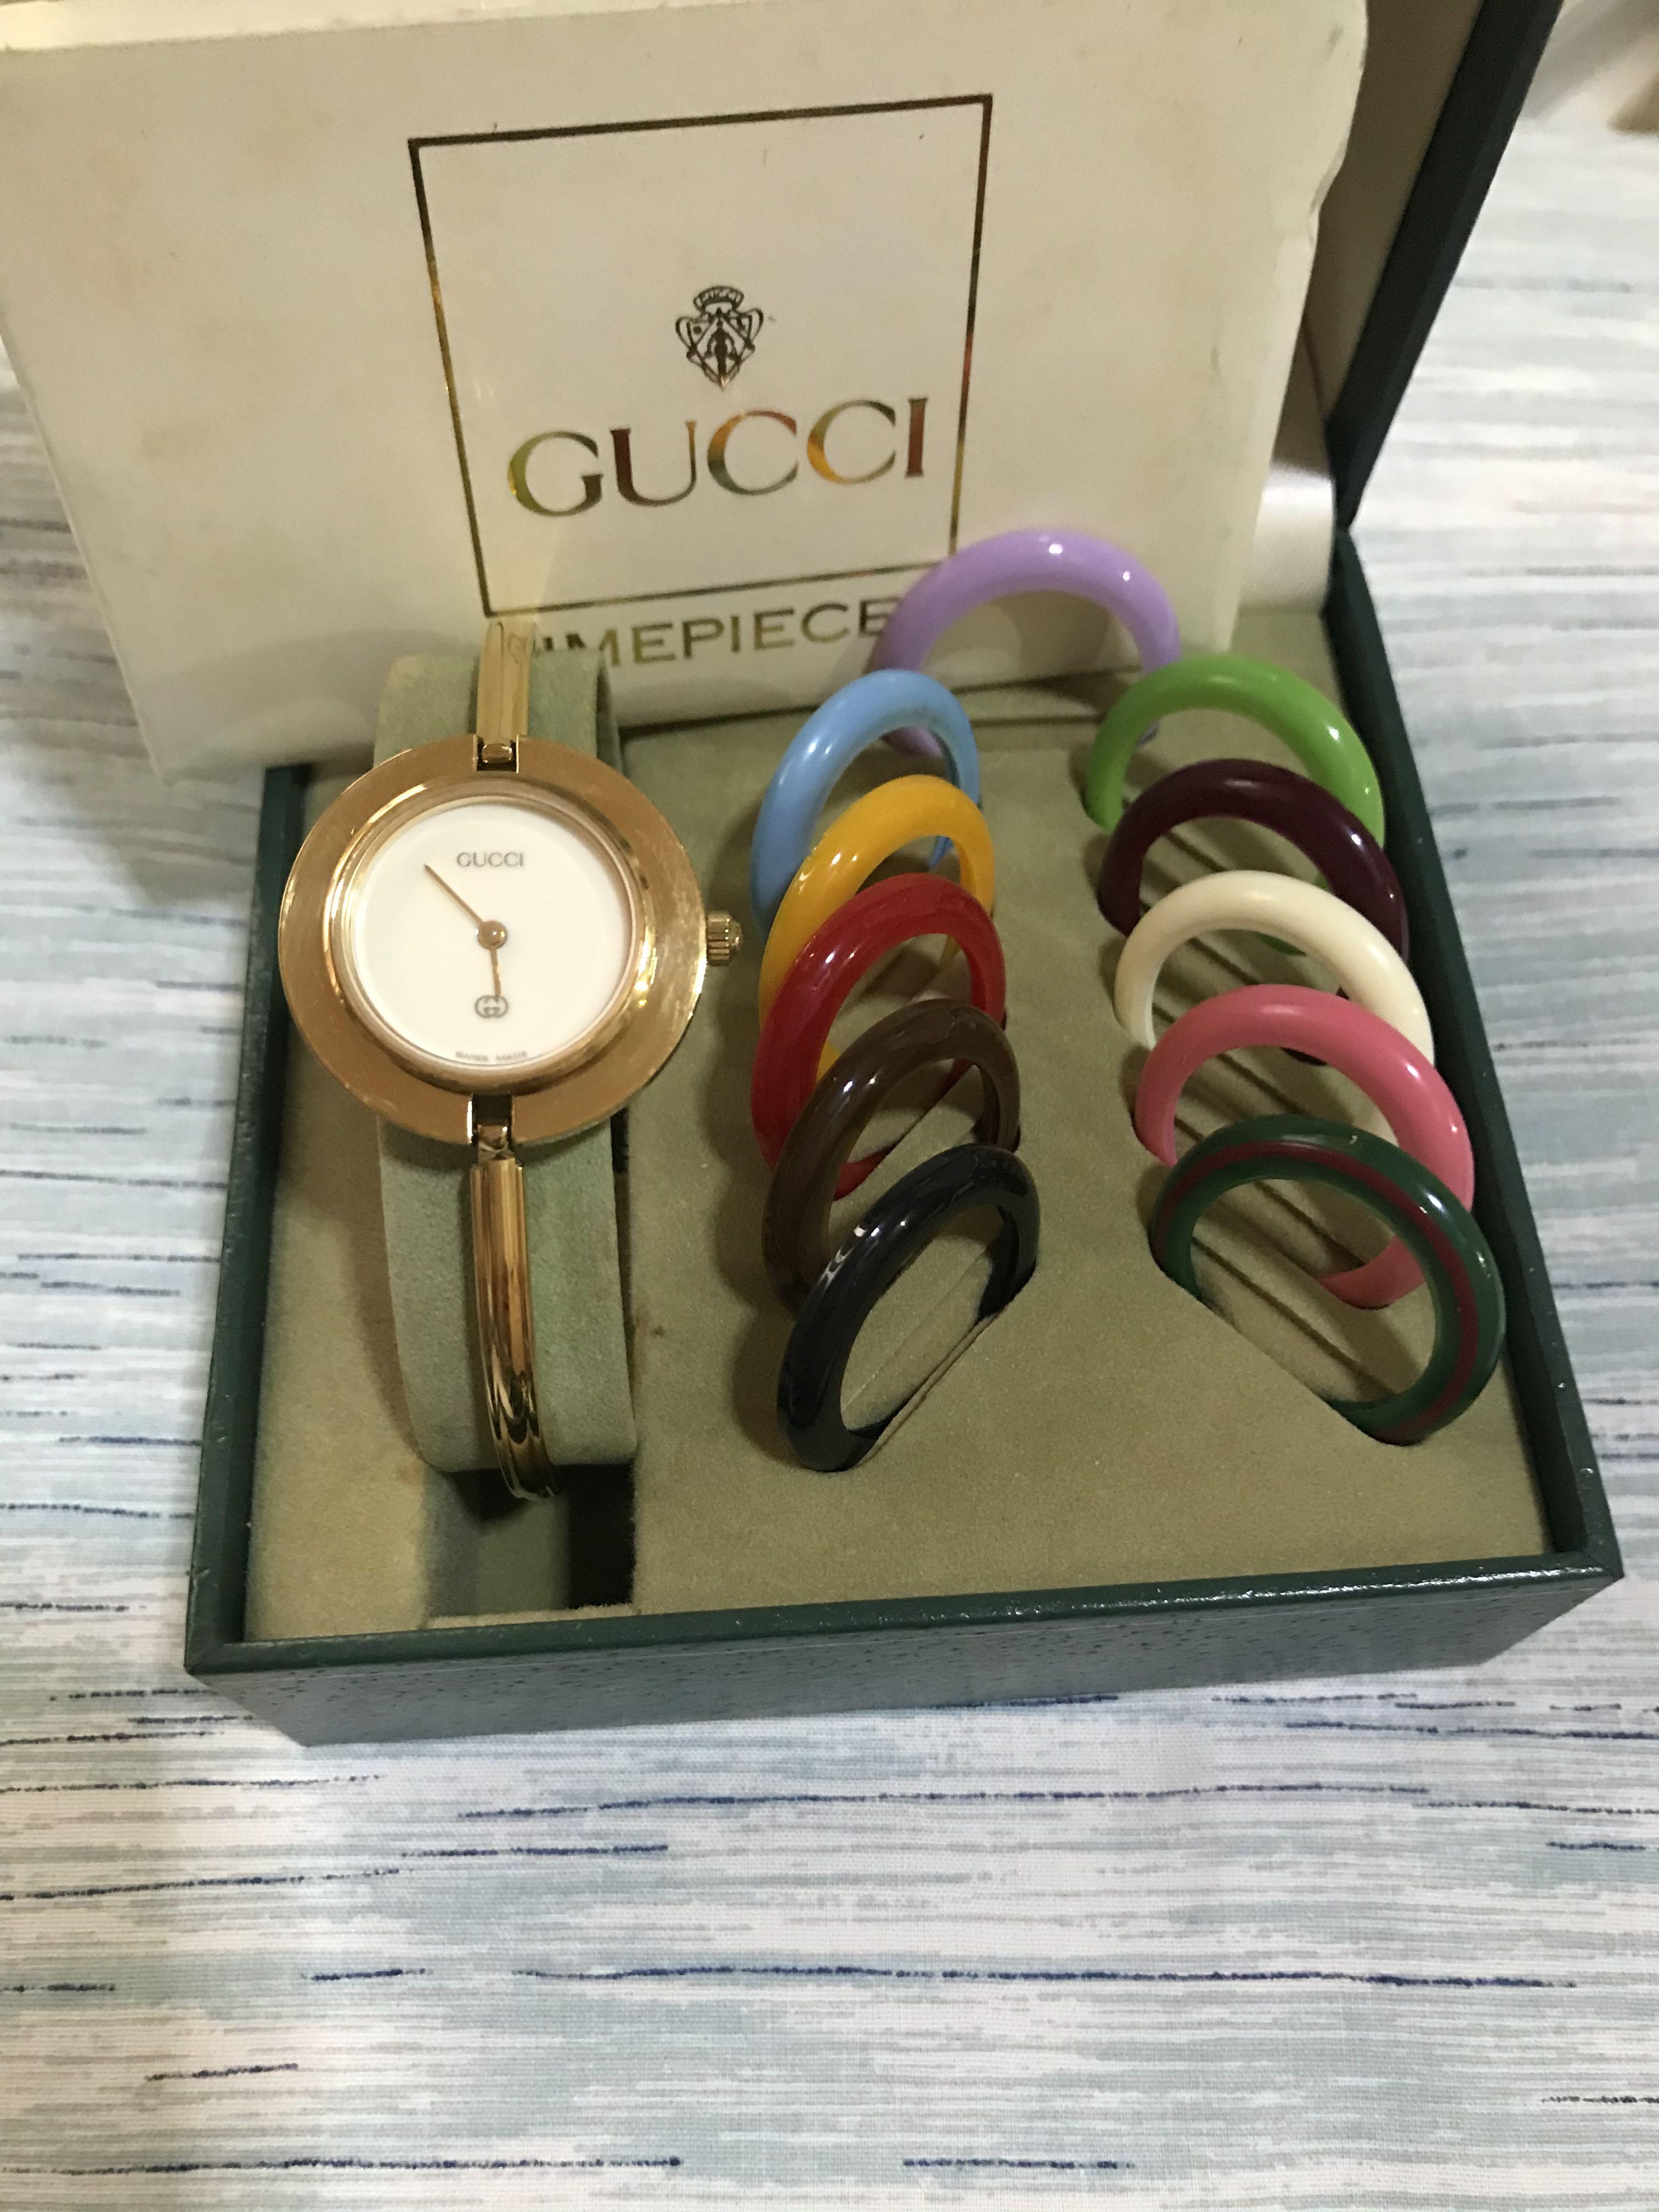 original gucci watch